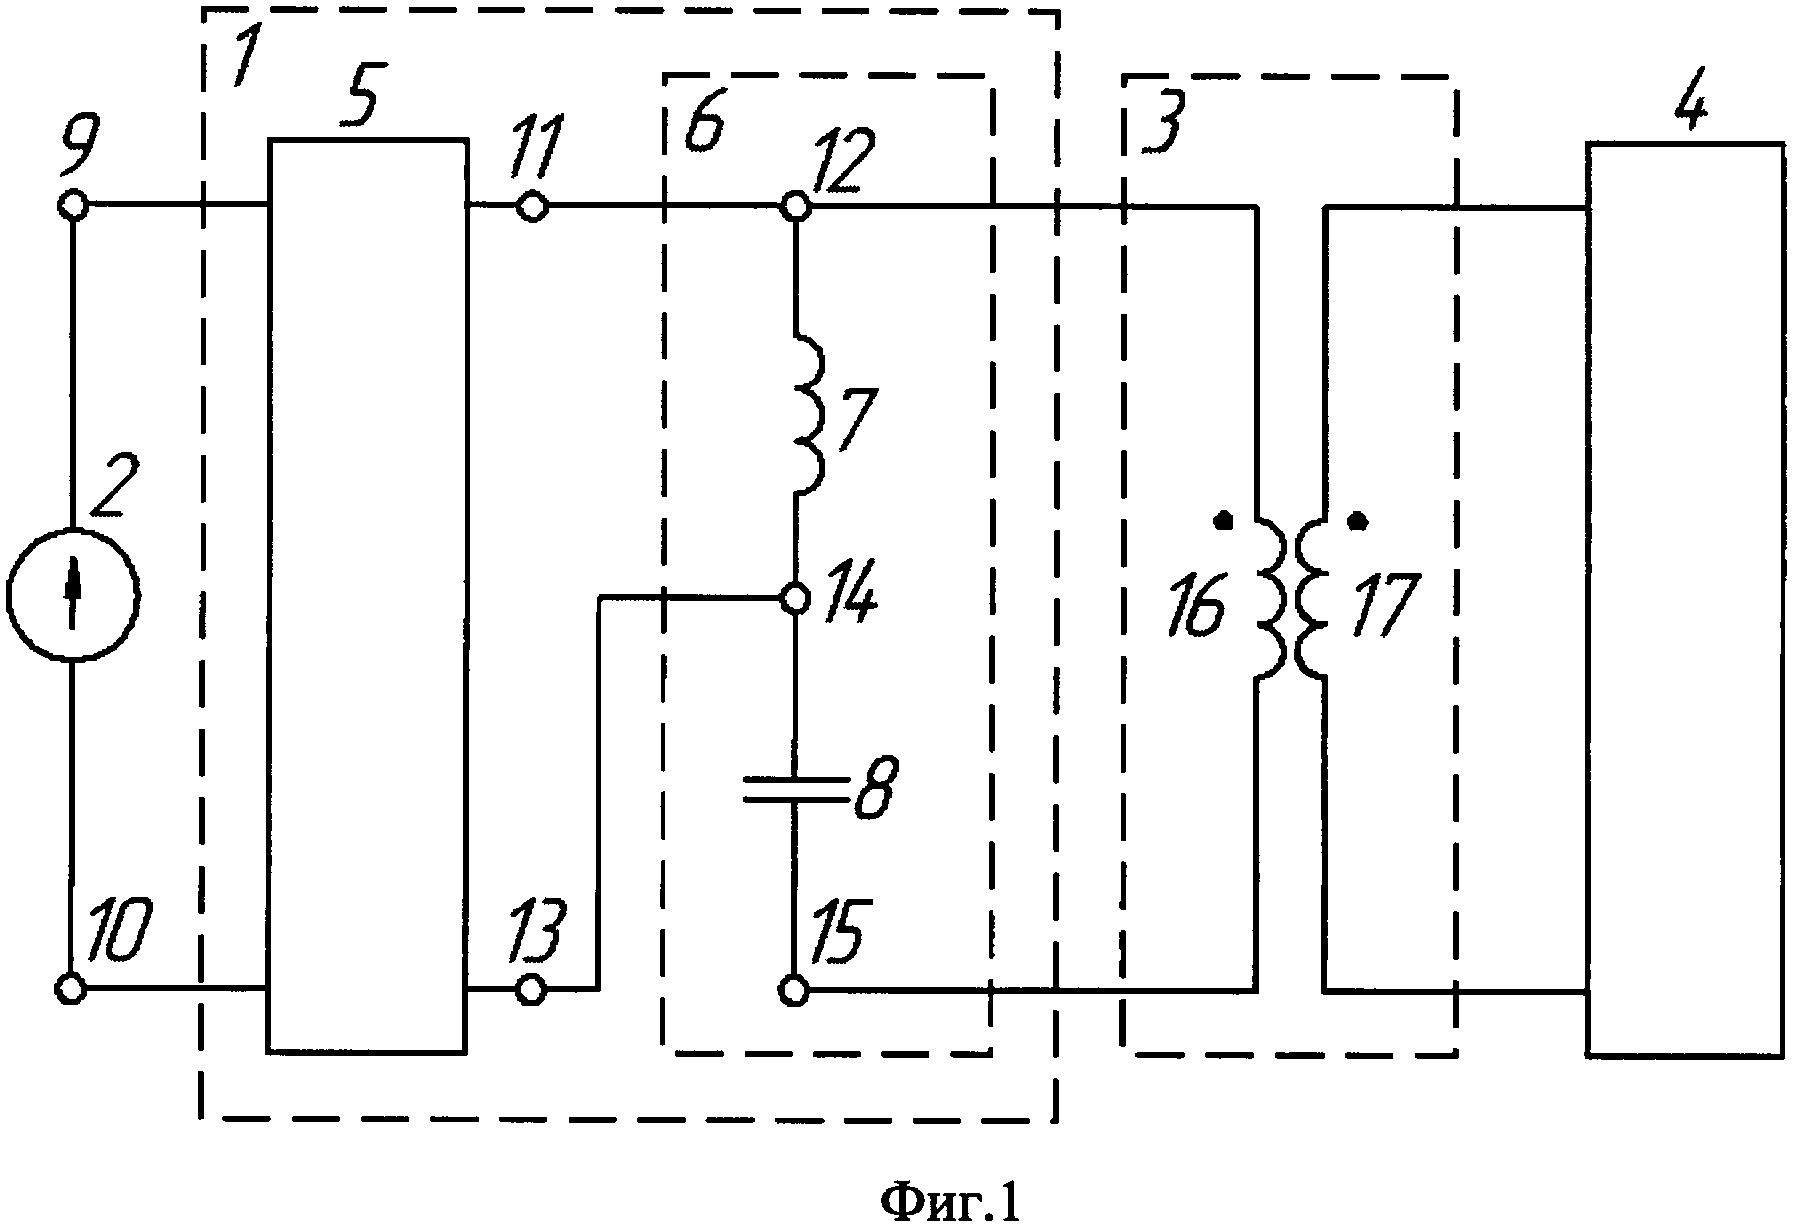 Автономный инвертор напряжения для питания нагрузки через трансформатор с низким коэффициентом связи между его обмотками